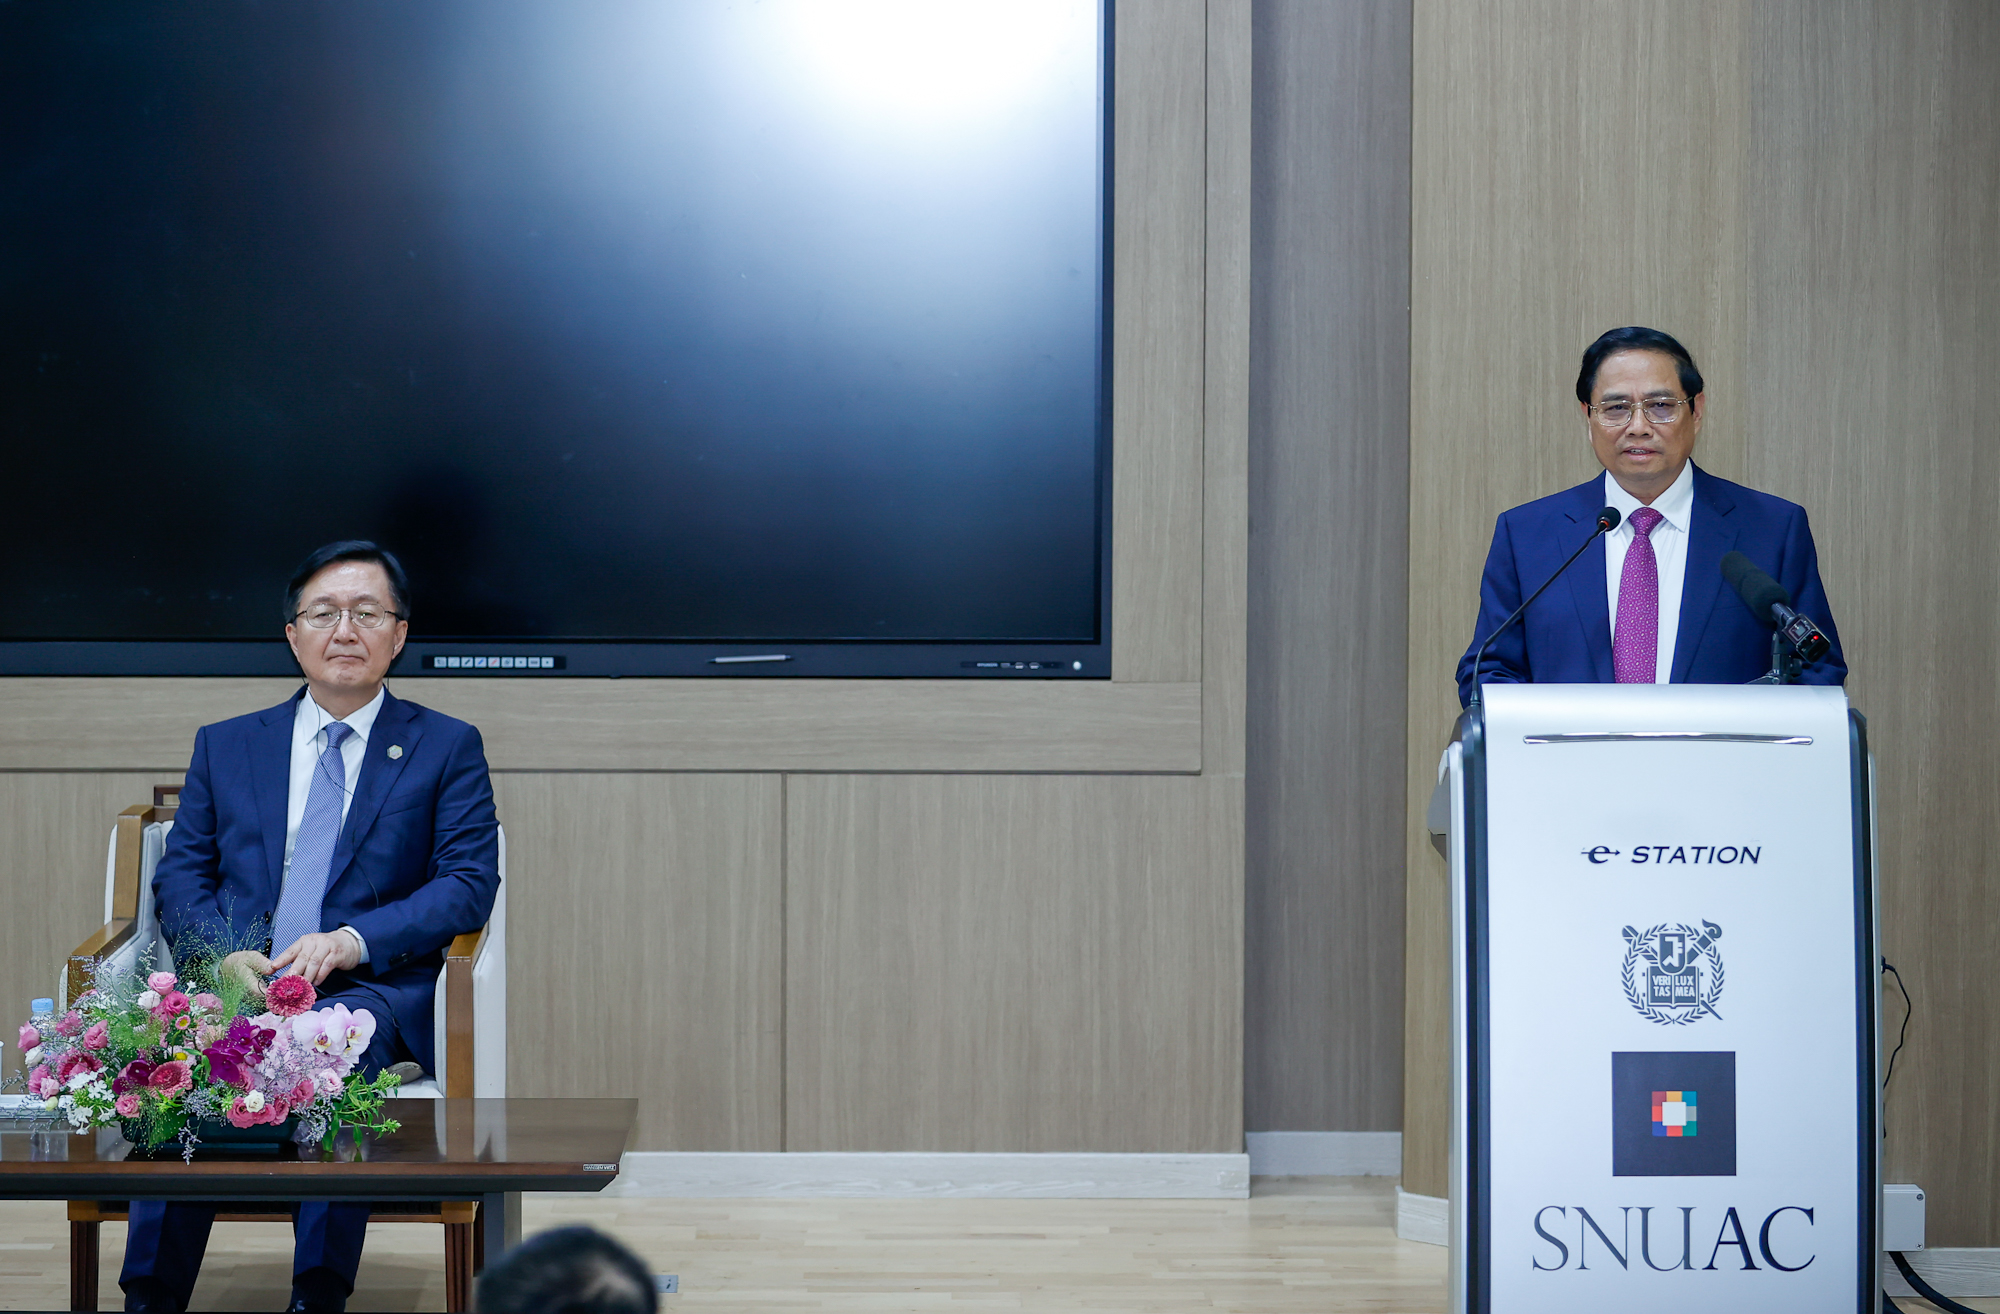 Thủ tướng bày tỏ ấn tượng về lịch sử, bề dày và thành tựu của Đại học Quốc gia Seoul, nơi đào tạo nhiều chuyên ngành nhất và có tỉ lệ sinh viên ra trường có việc làm cao nhất - Ảnh: VGP/Nhật Bắc